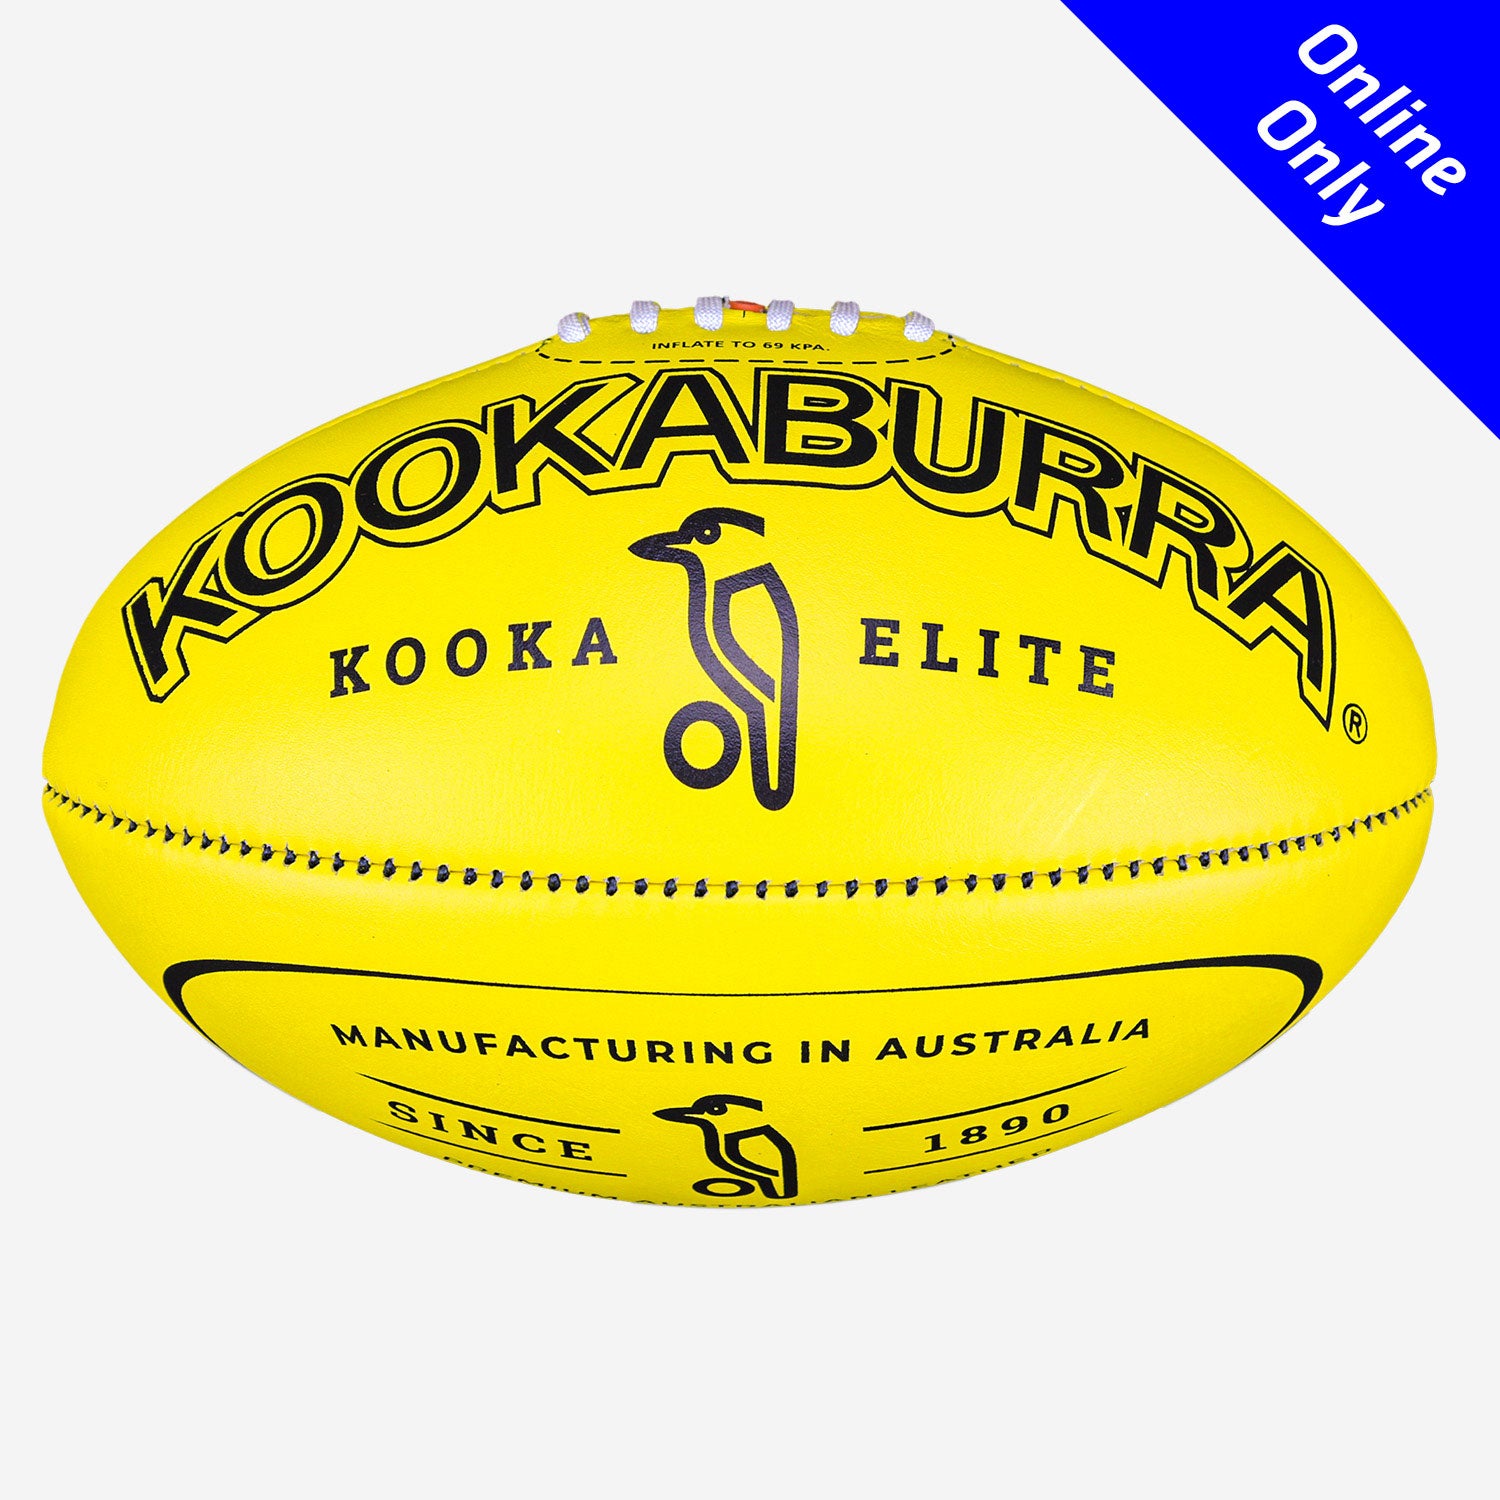 Kookaburra - Elite Aussie Rules Football